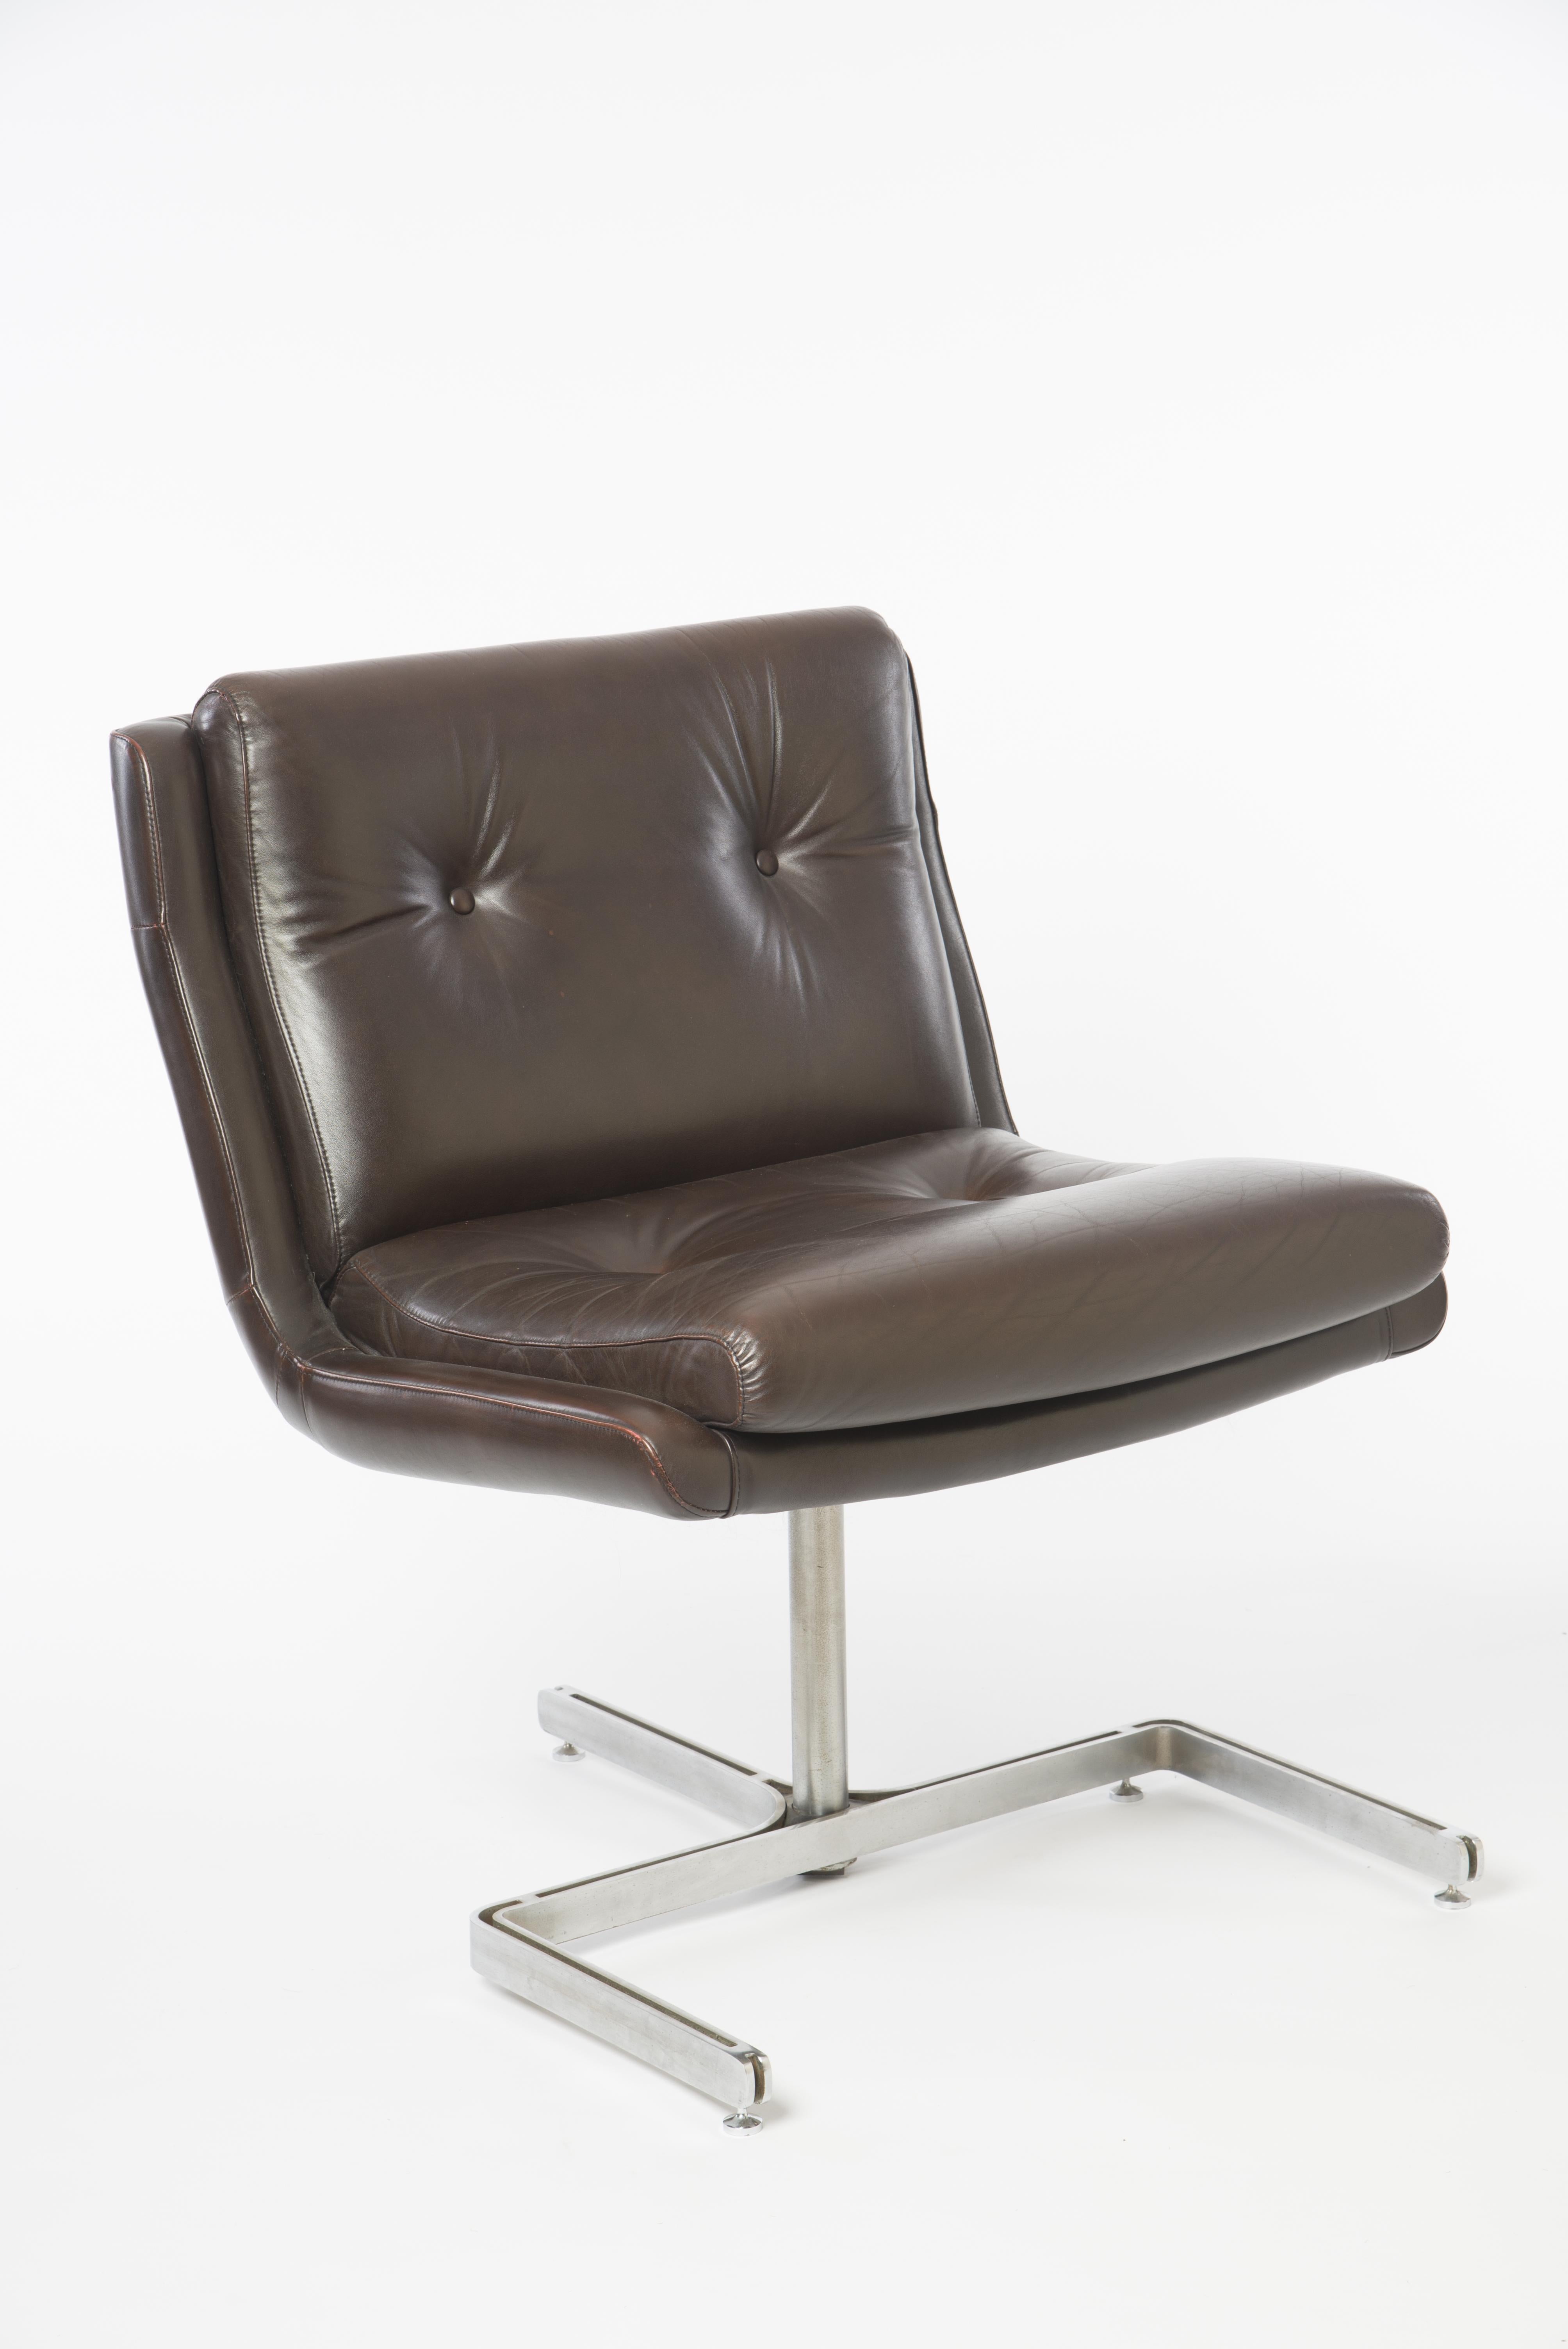 Dieses schöne Sesselpaar von Raphael Raffel wurde ursprünglich für die Einrichtung des Chefbüros der P.T.T. Telecom France im Jahr 1973 hergestellt.
Die Kombination aus Leder, Stahl und klaren Linien verleiht diesen Stühlen ihr außergewöhnliches